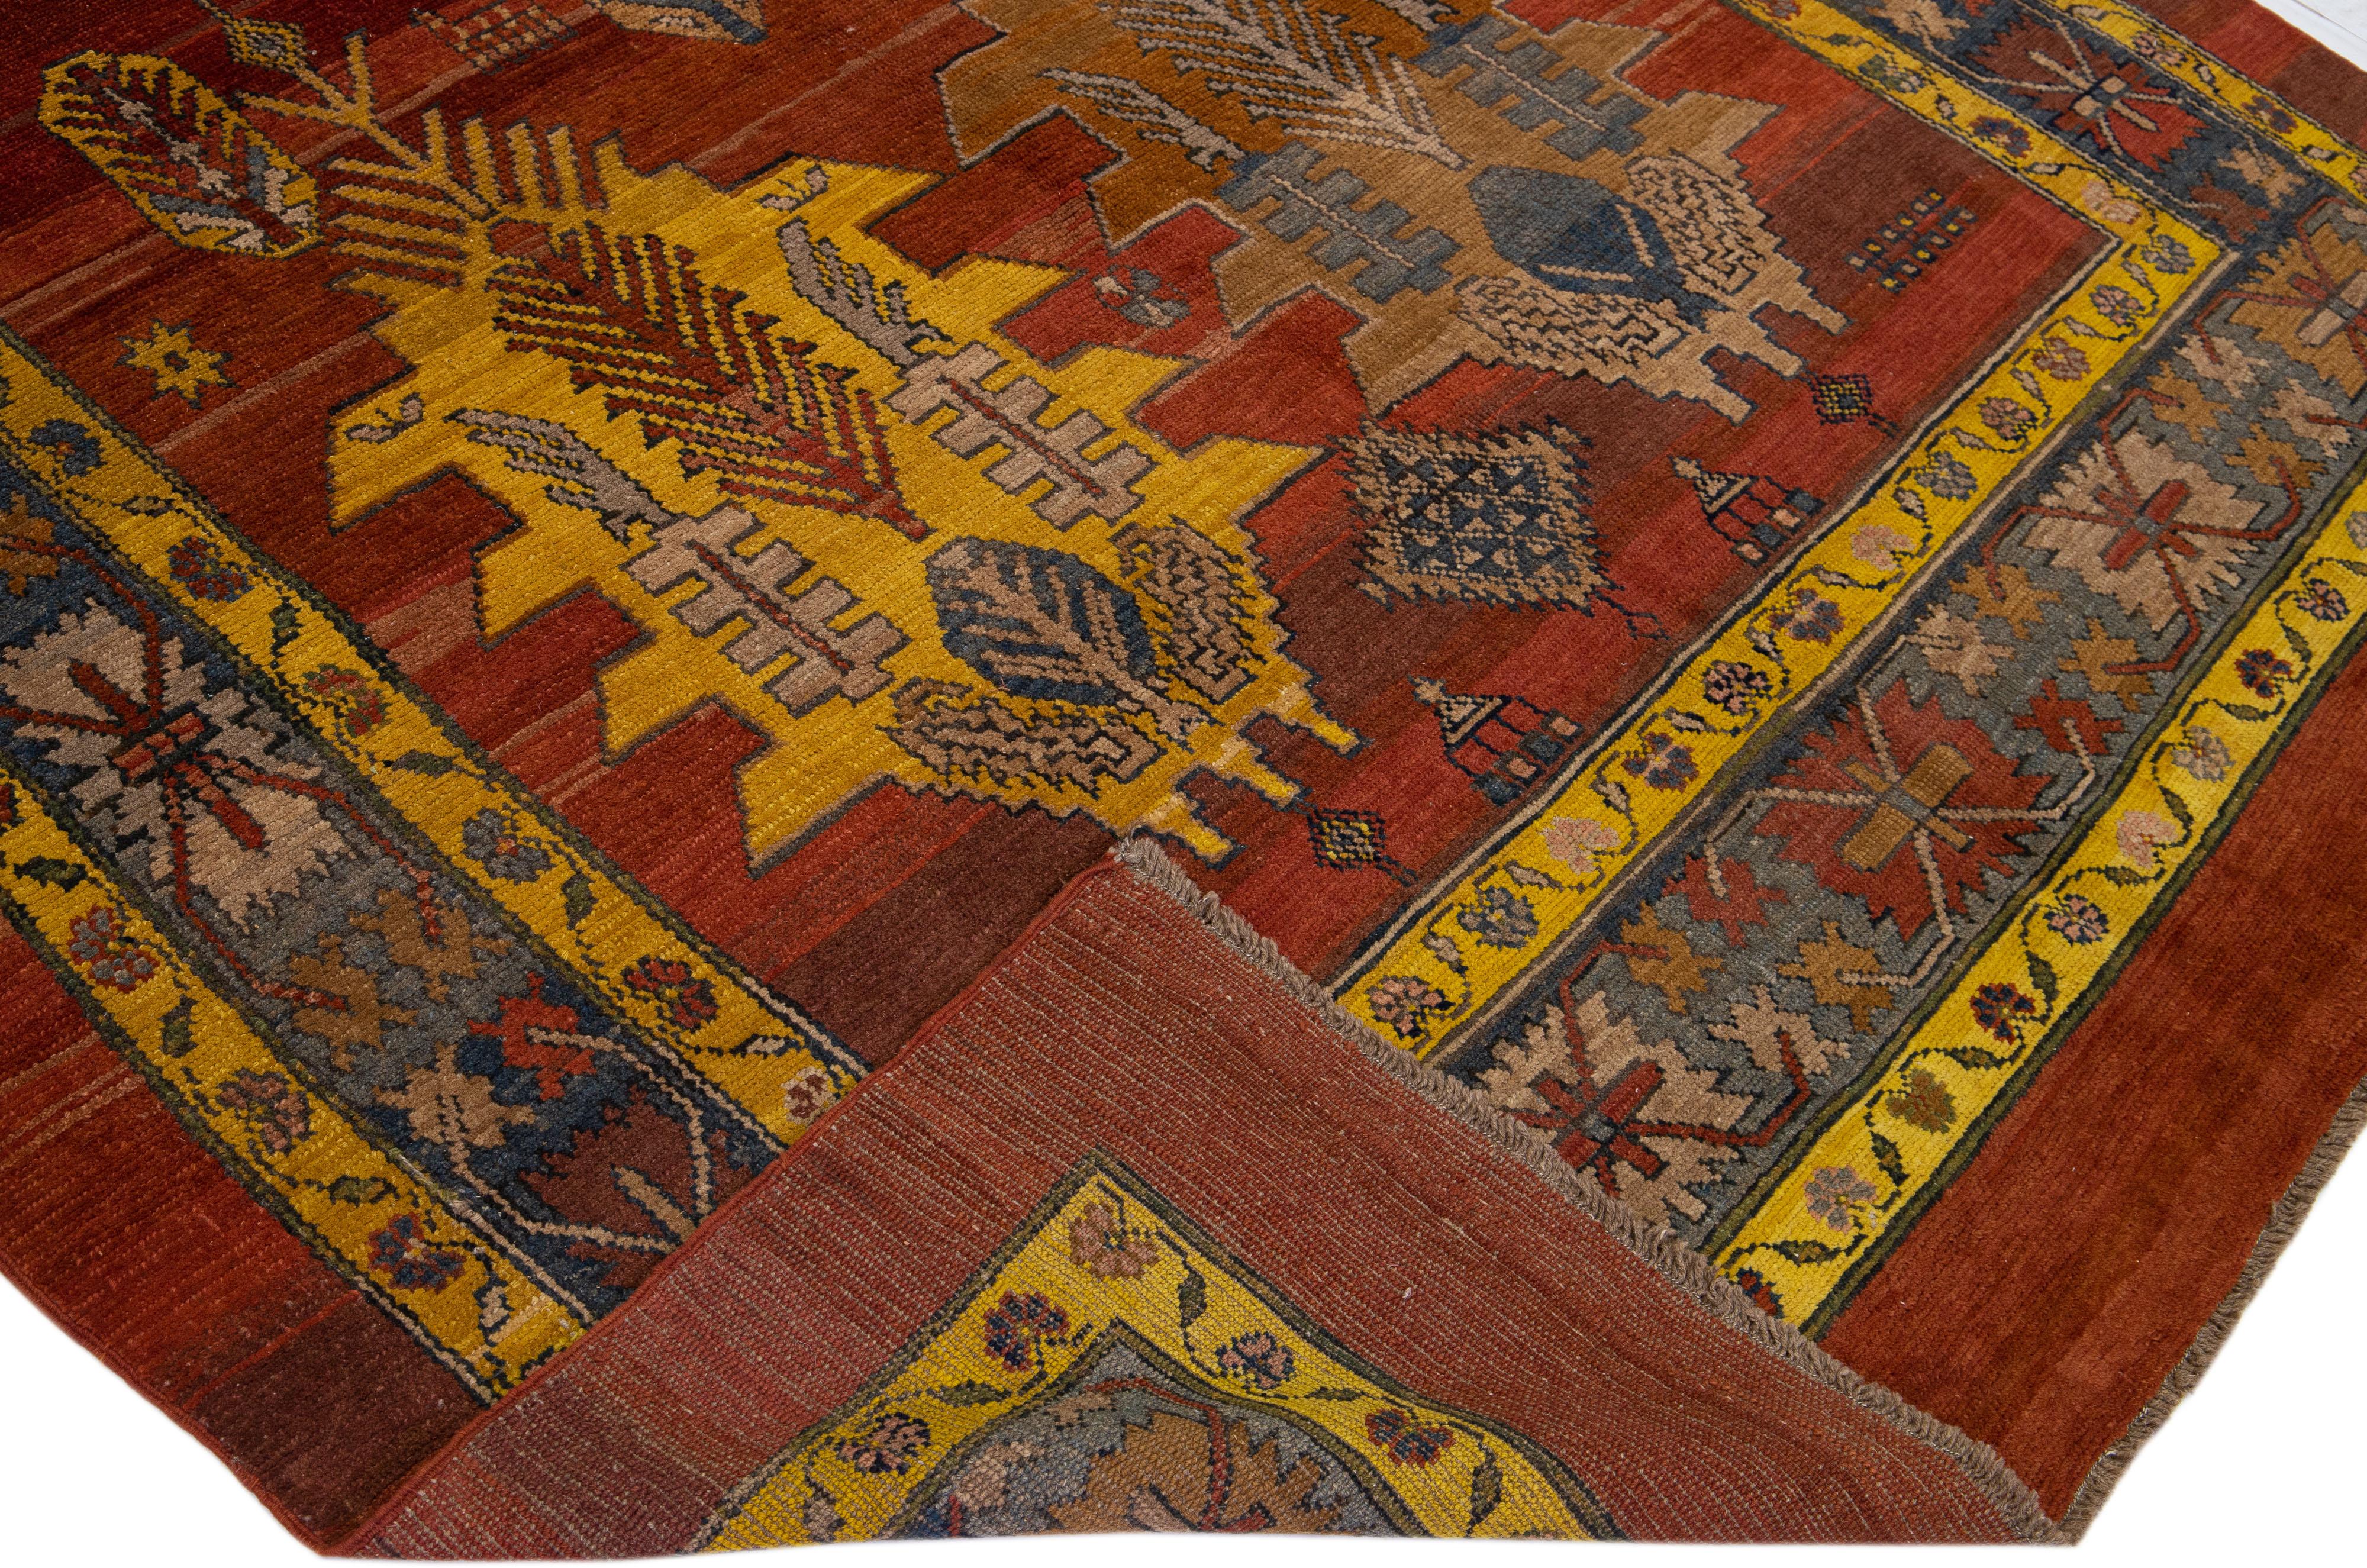 Magnifique tapis vintage Bakshaish en laine nouée à la main avec un champ de couleur rouge-rouille. Ce tapis persan présente un cadre bleu avec des accents jaunes, orange et bruns dans un motif tribal caucasien sur toute sa surface.

Ce tapis